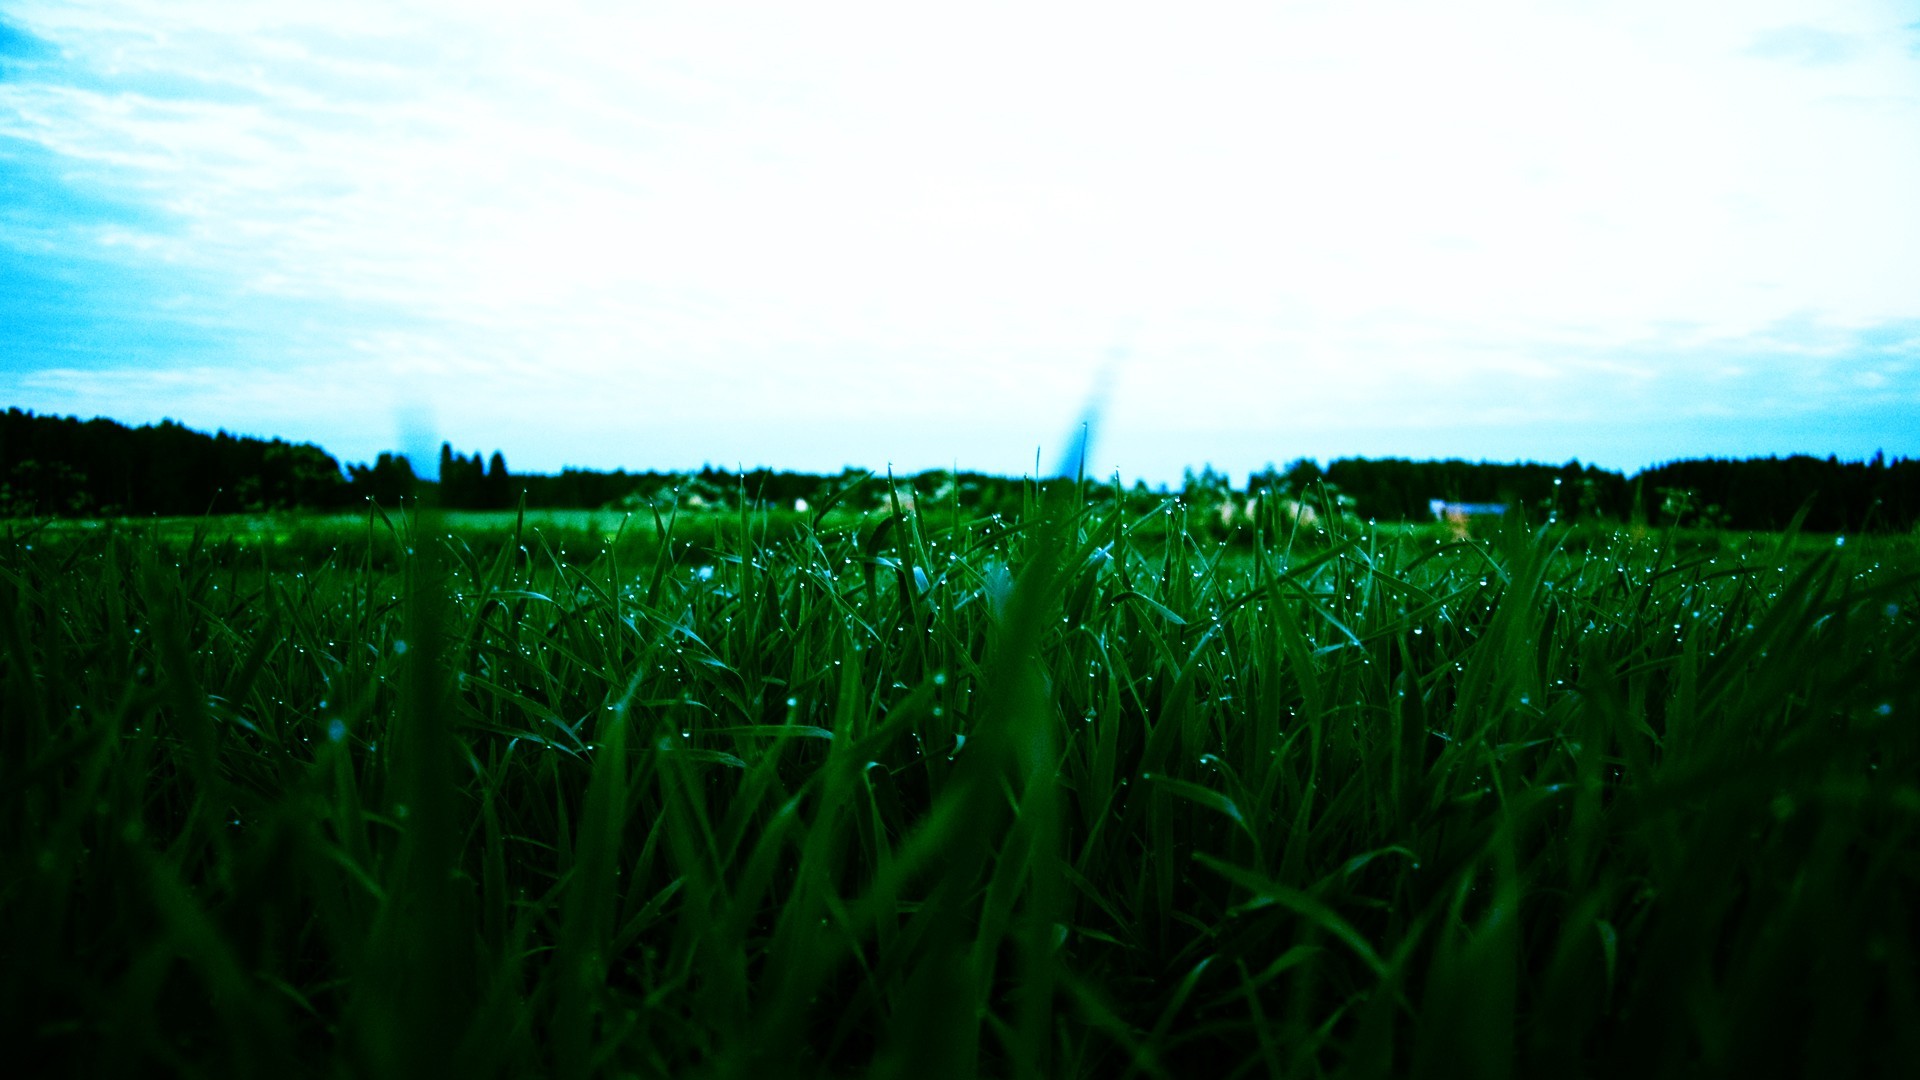 General 1920x1080 grass landscape water drops sky plants outdoors field